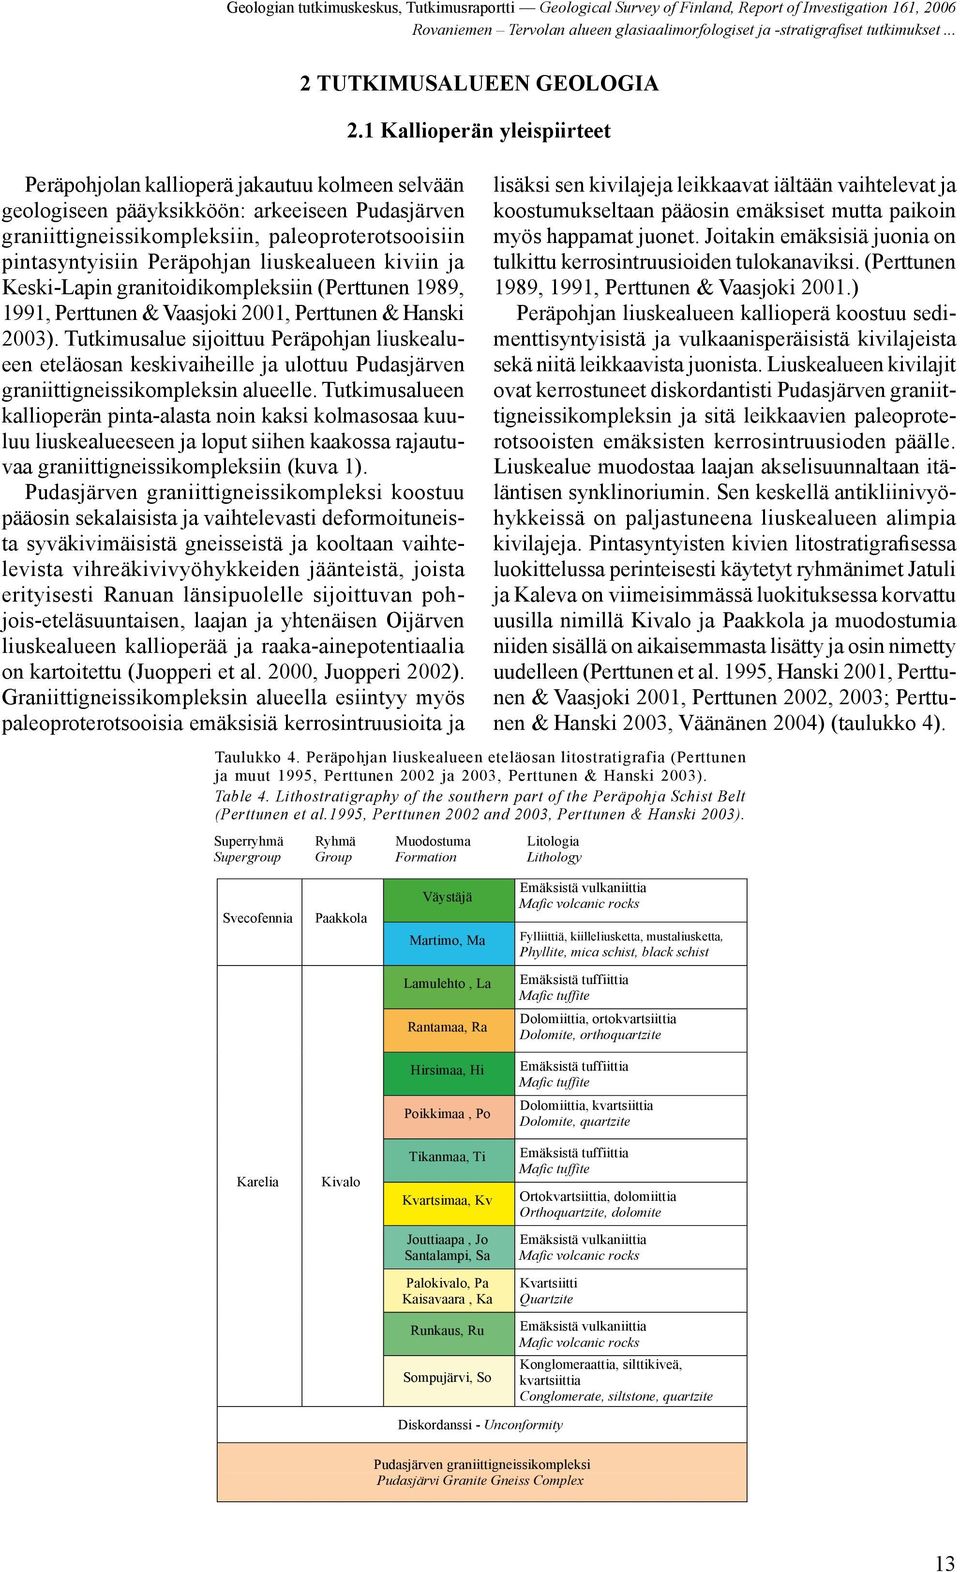 ja Keski-Lapin granitoidikompleksiin (Perttunen 1989, 1991, Perttunen & Vaasjoki 2001, Perttunen & Hanski 2003).